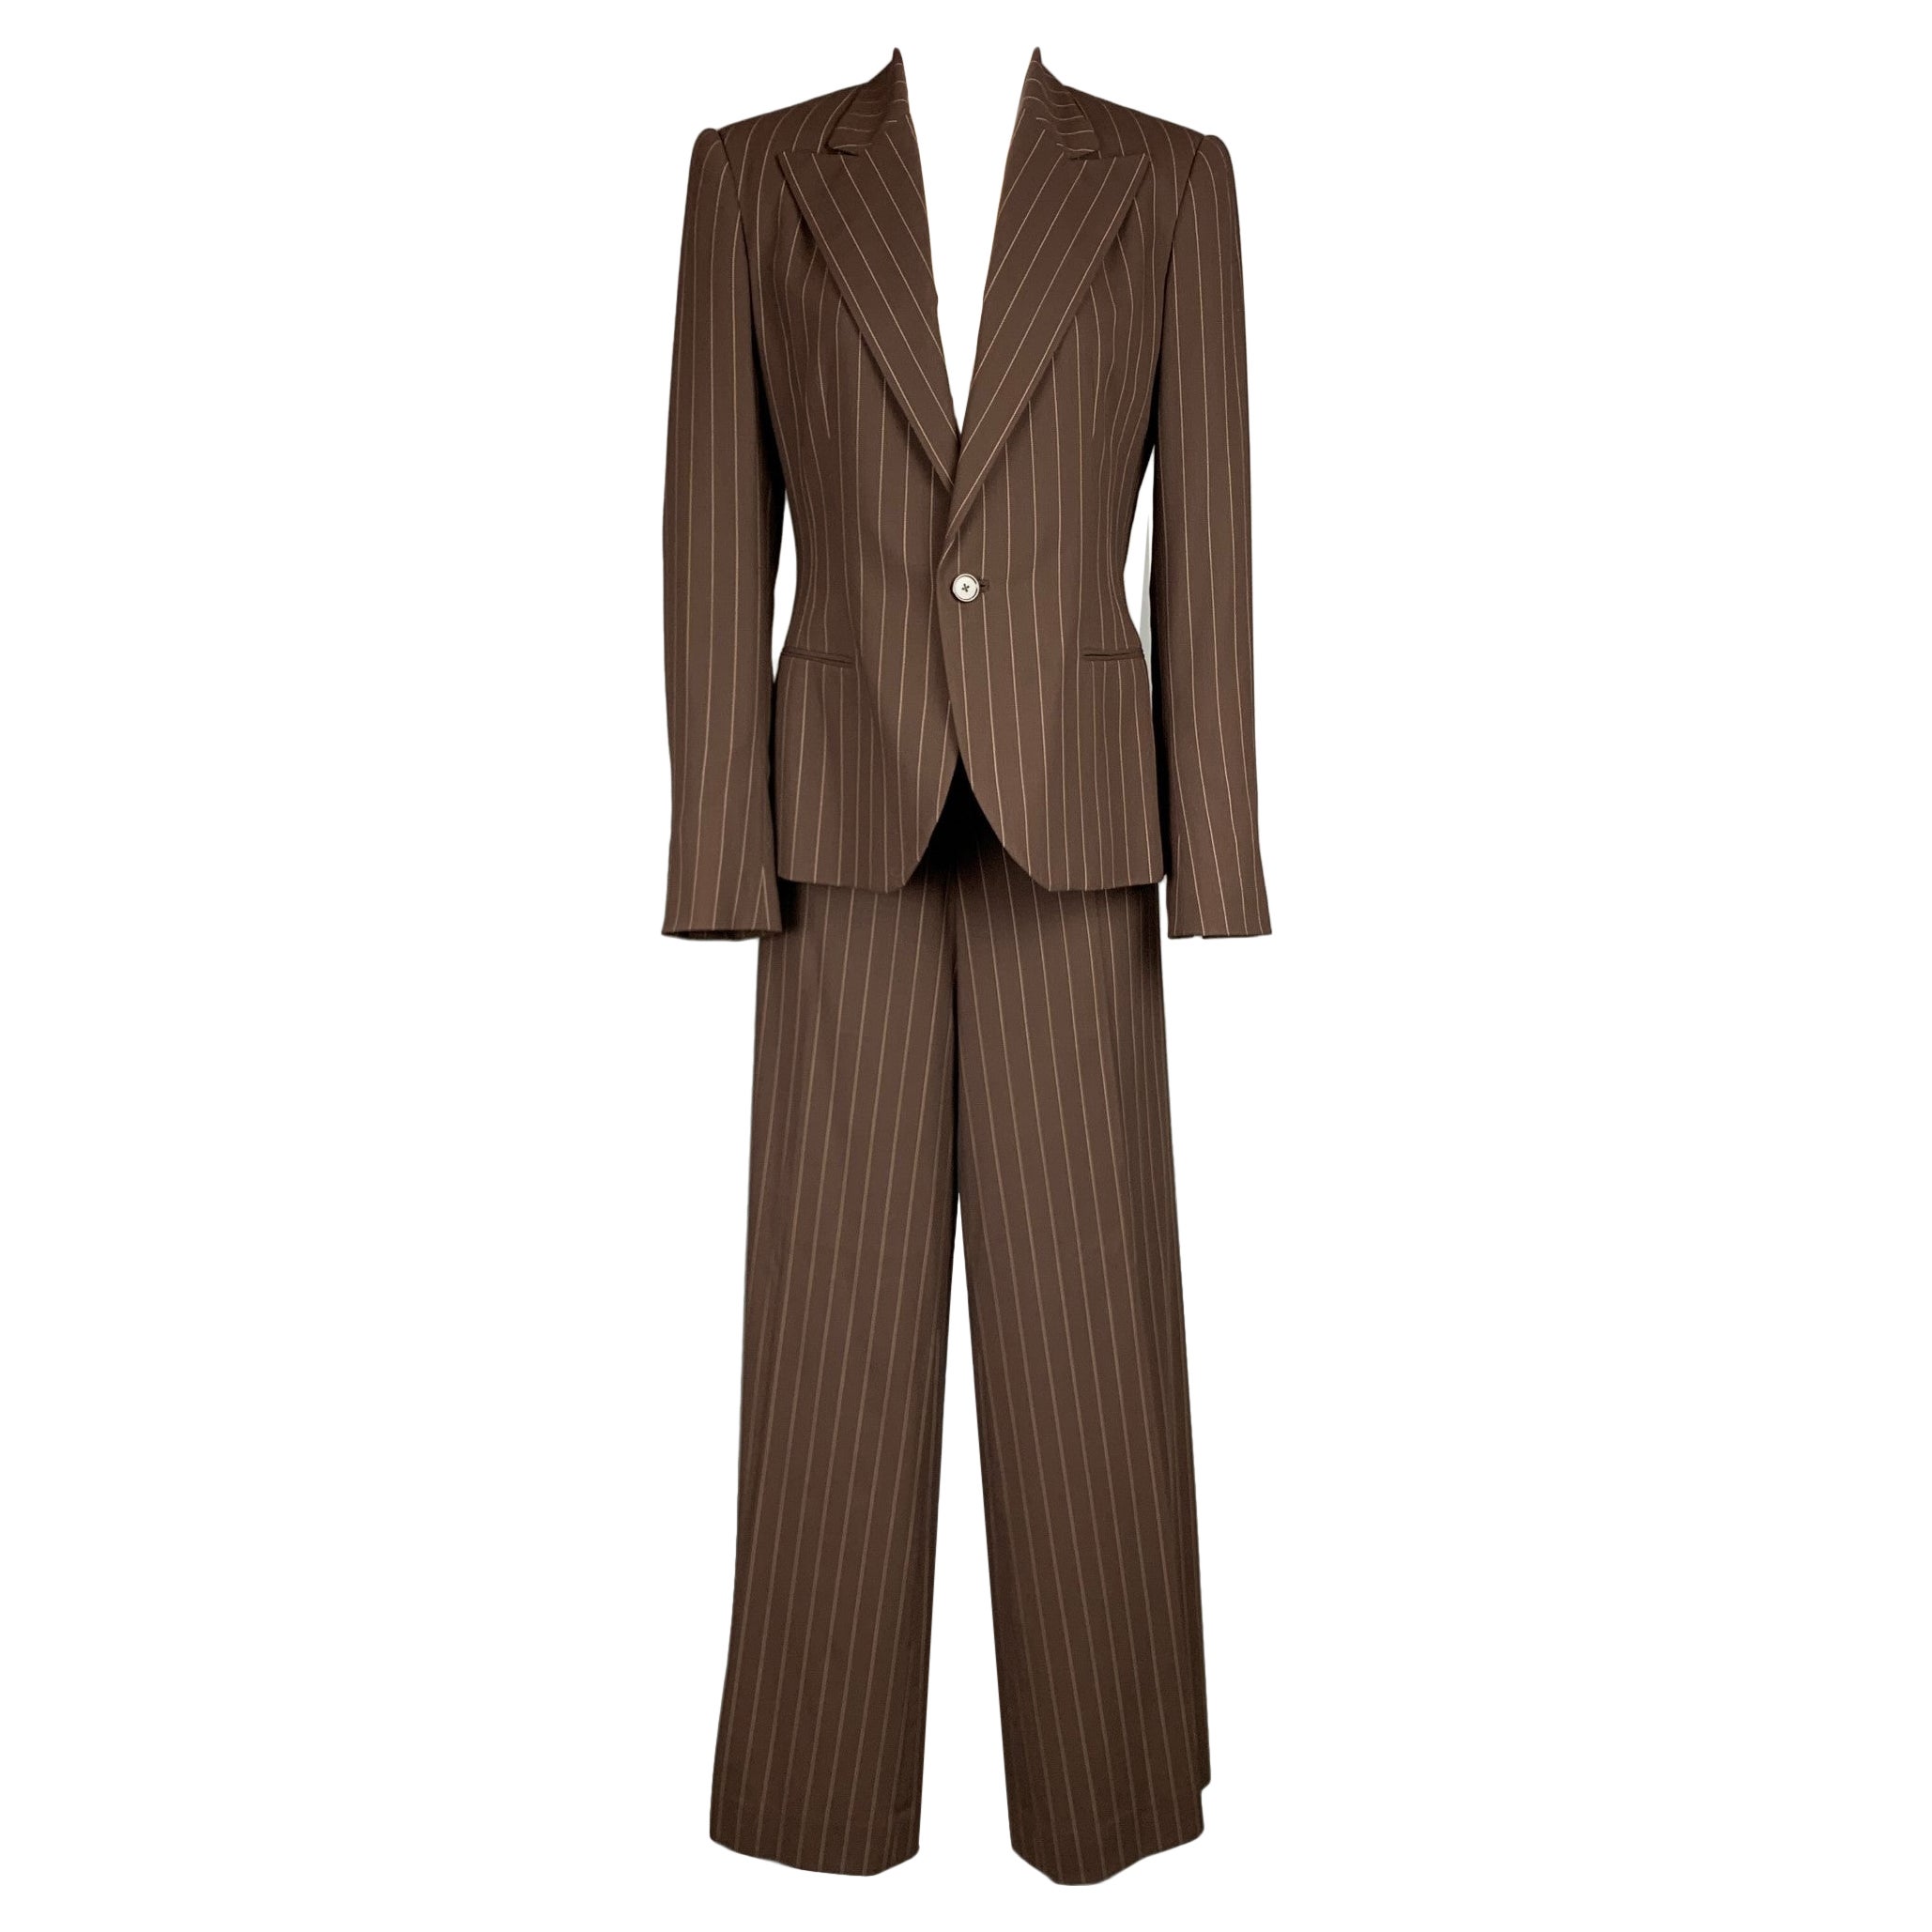 RALPH LAUREN Collection Size 10 Brown & Cream Pinstripe Virgin Wool Suit